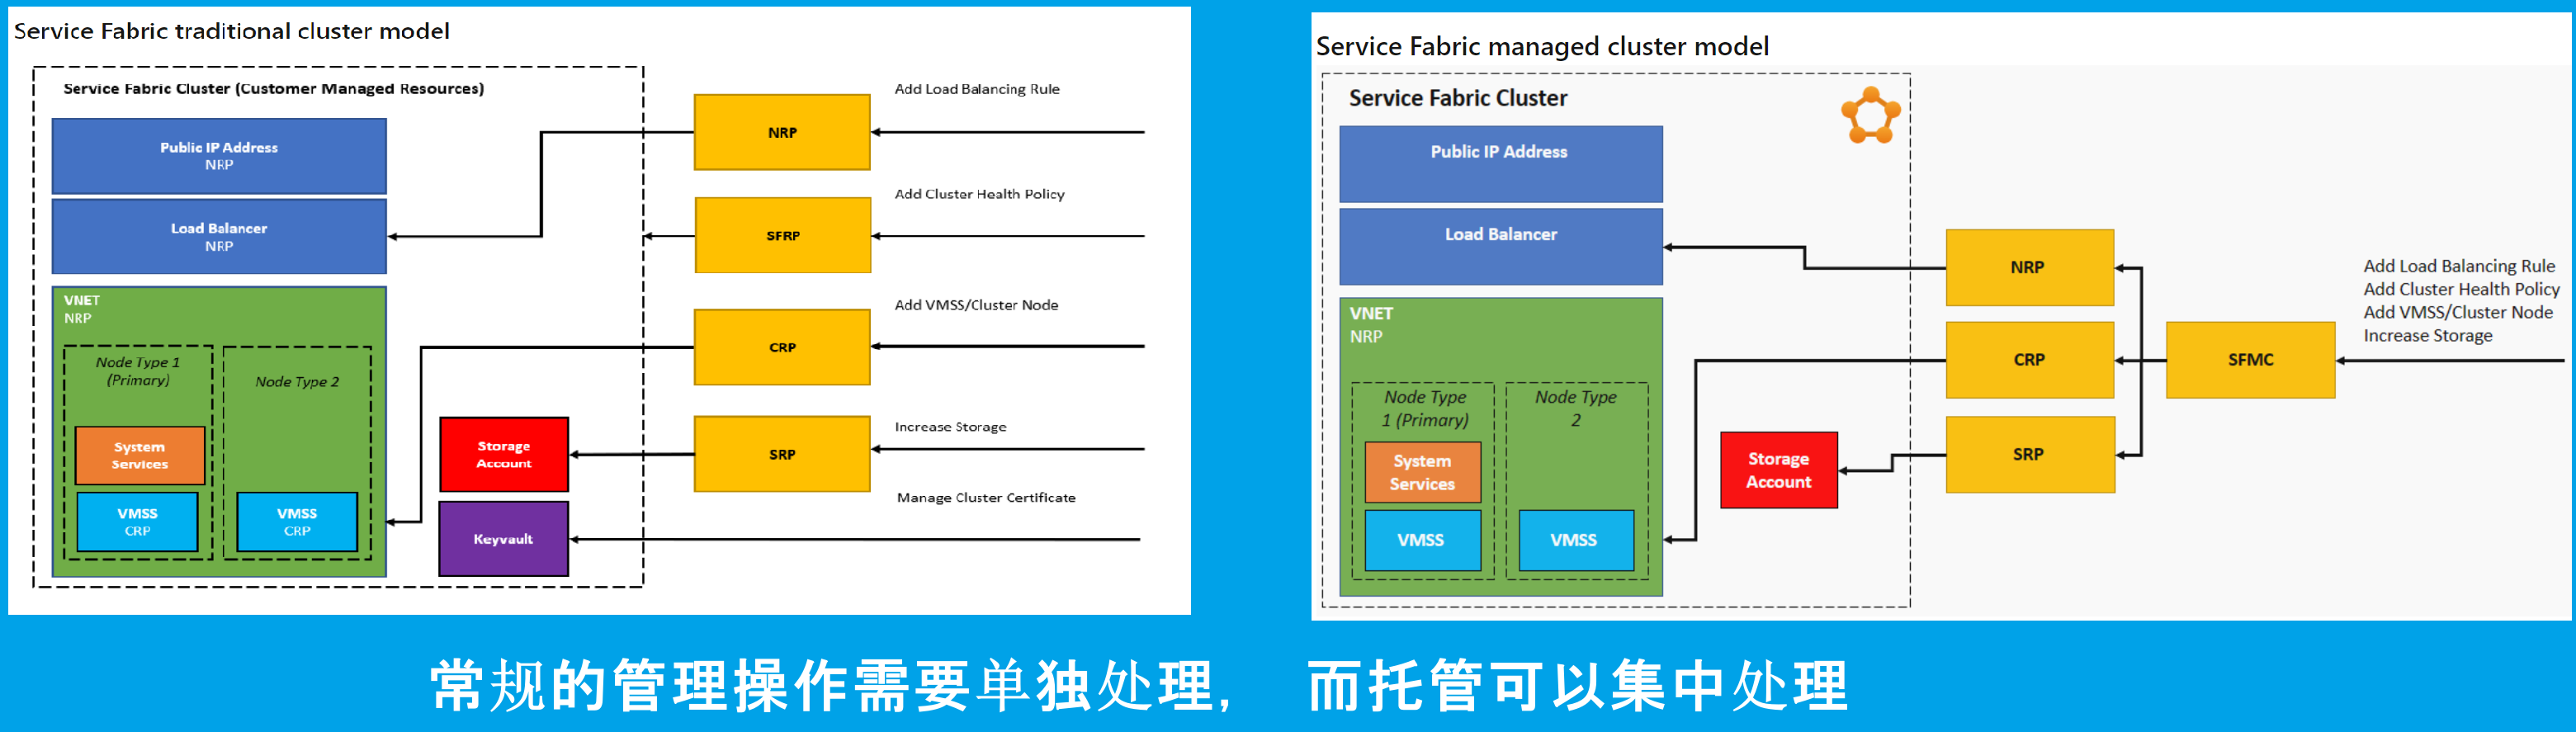 【Azure Service Fabric】关于Service Fabric的相关问题_Azure